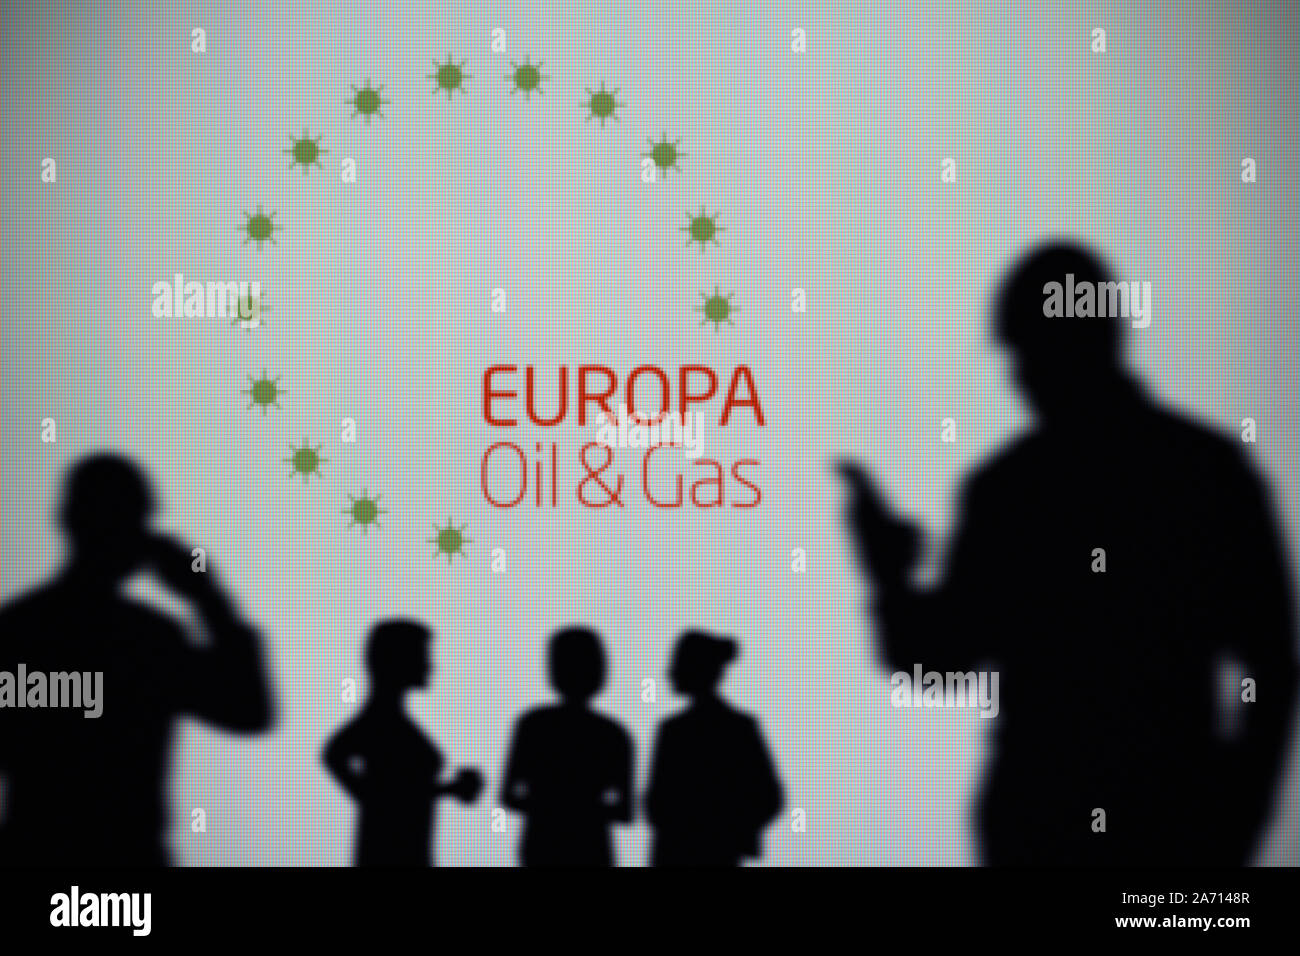 L'Europa Oil & Gas logo è visibile su uno schermo a LED in background mentre si profila una persona utilizza uno smartphone (solo uso editoriale) Foto Stock